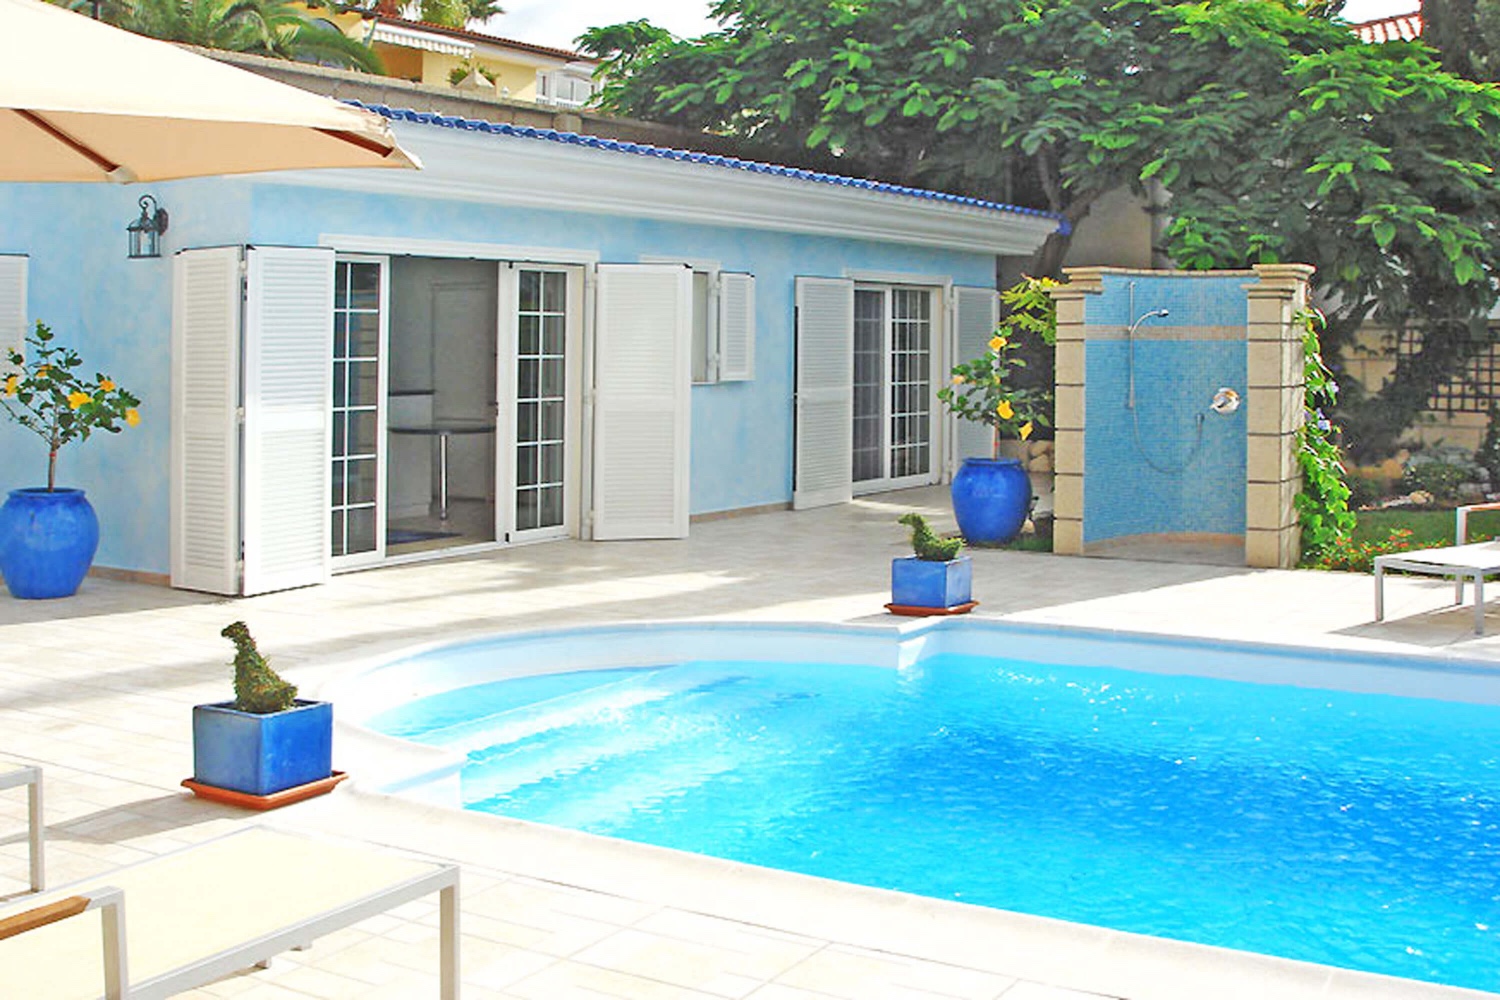 Mooi vakantiehuis voor twee personen met gemeenschappelijk zwembad in de buurt van Costa Adeje in het zonnige zuiden van Tenerife